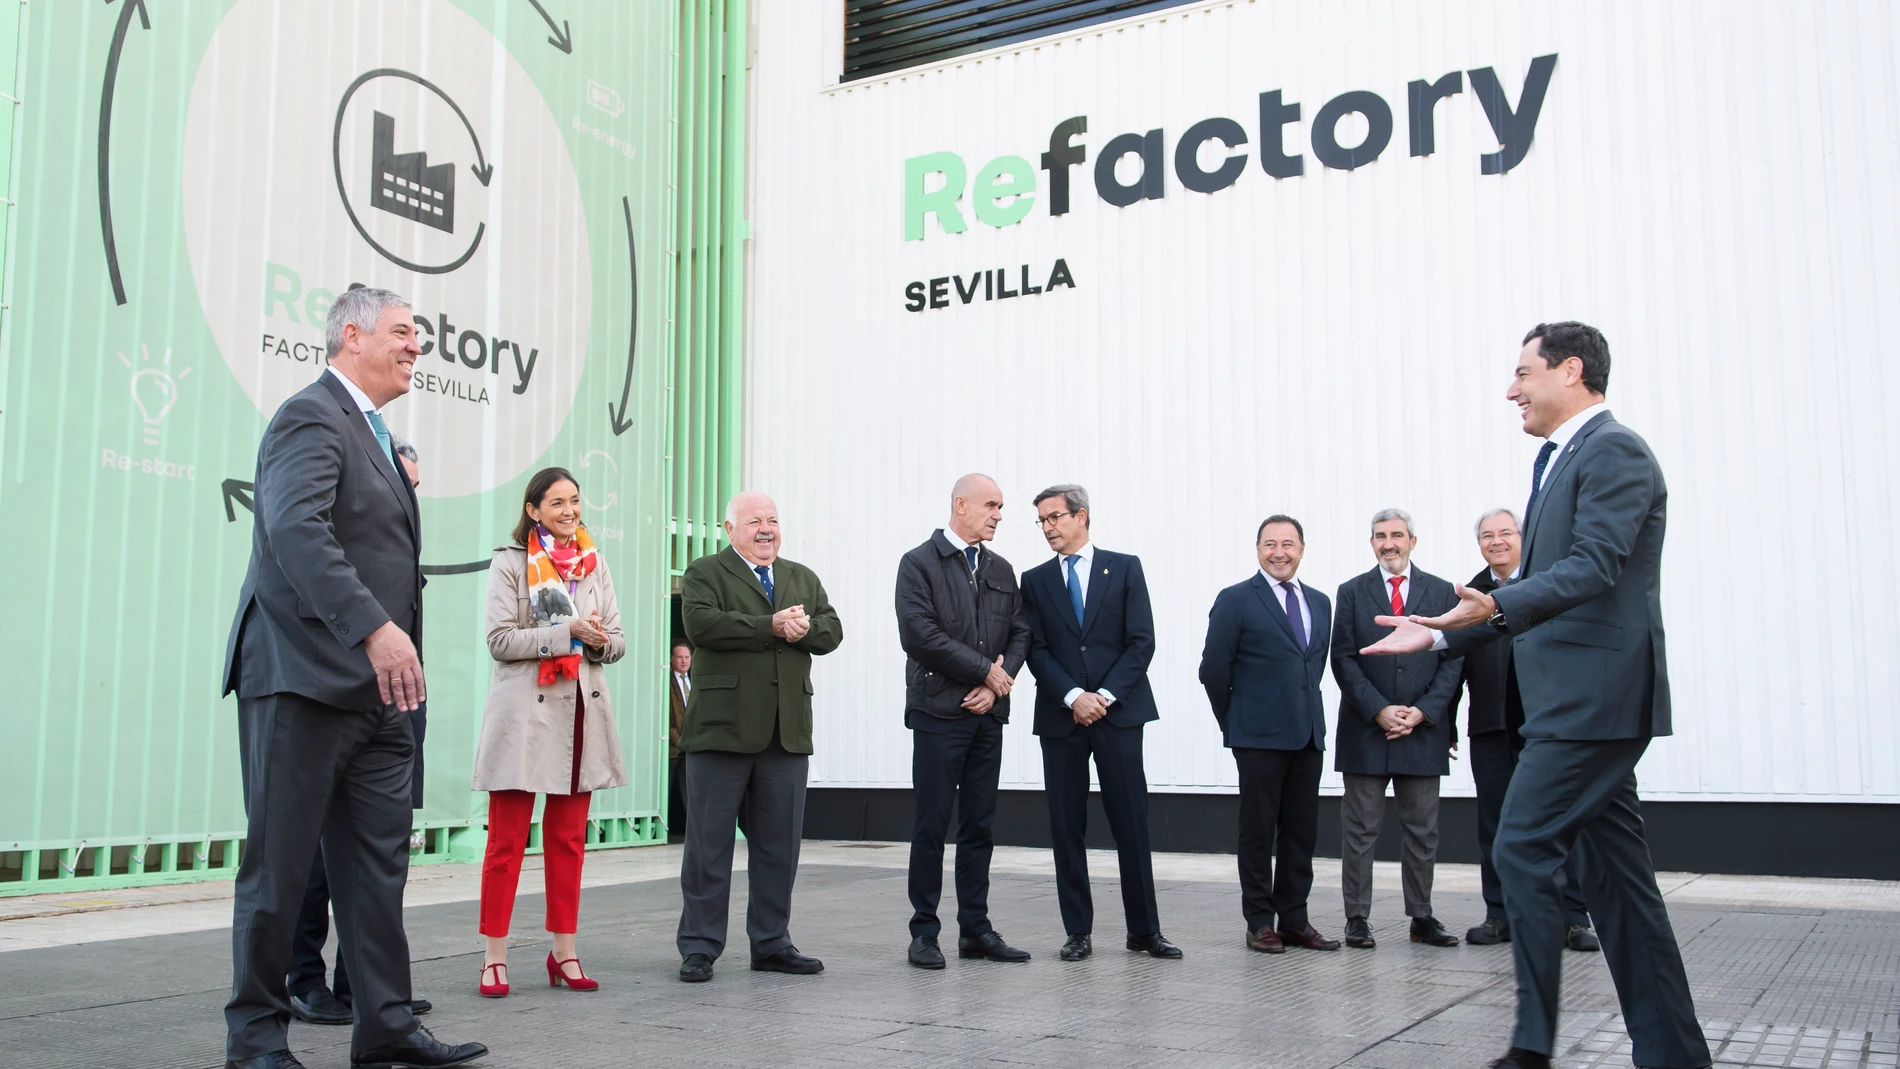 GRAFAND5631. SEVILLA, 02/12/2022.- El presidente de la Junta de Andalucía, Juanma Moreno (d), saluda al director general de Renault España, José Vicente de los Mozos (i), en presencia de la ministra de Industria, Reyes Maroto (2i), el presidente del Parlamento andaluz, Jesús Aguirre(3i) y al alcalde de Sevilla, Antonio Muñoz (4i), entre otros, a su llegada a la factoría del grupo Renault, que ha inaugurado en Sevilla, donde se fabrican cajas de cambios, la Refactory, el primer proyecto de economía circular dedicado de forma integral a la movilidad que entre otras cosas, permitirá dar una segunda vida a los vehículos usados. EFE/ Raúl Caro.